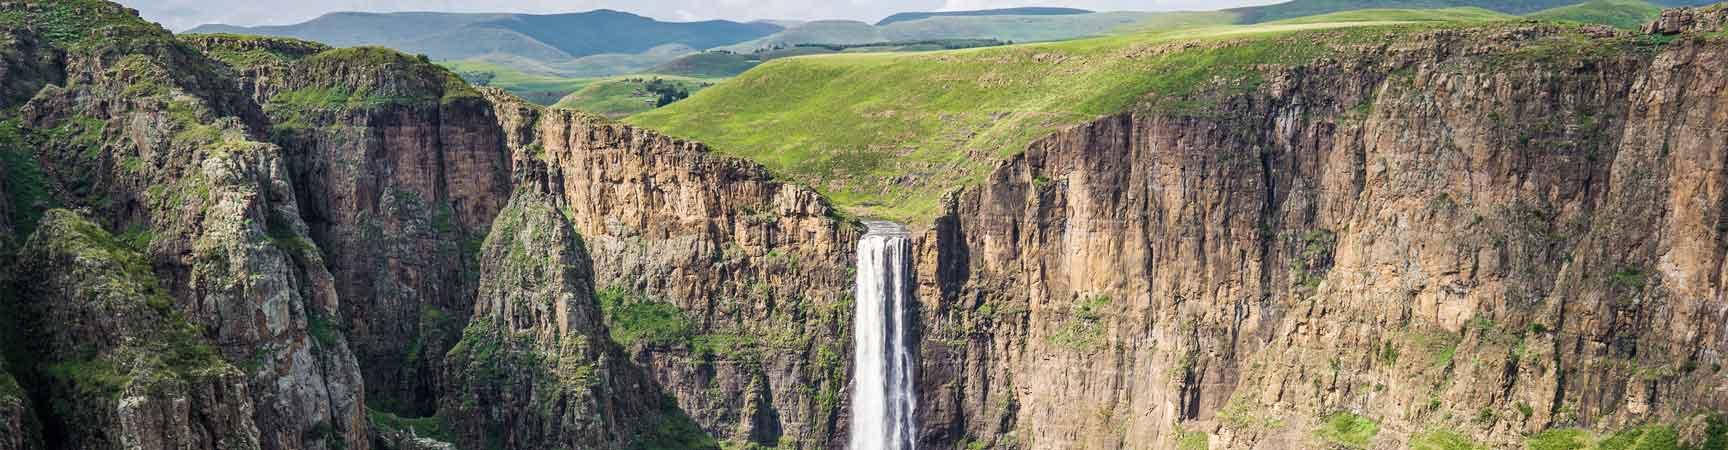 Imagempanorâmica De Cachoeira Em Lesotho. Papel de Parede